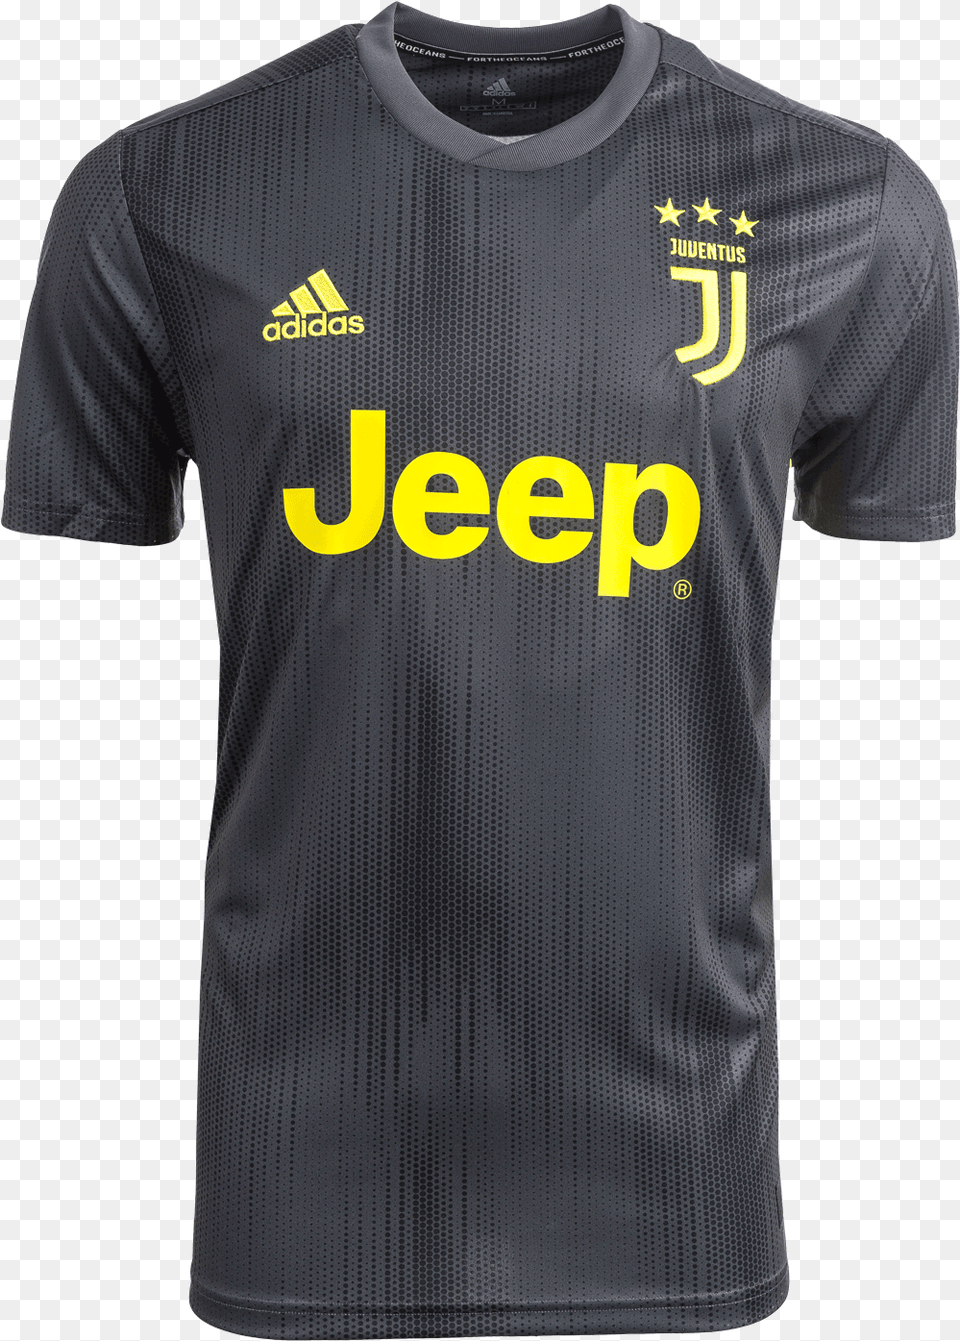 Juventus Third Jersey Juventus Third Jersey Clothing, Shirt, T-shirt Free Transparent Png